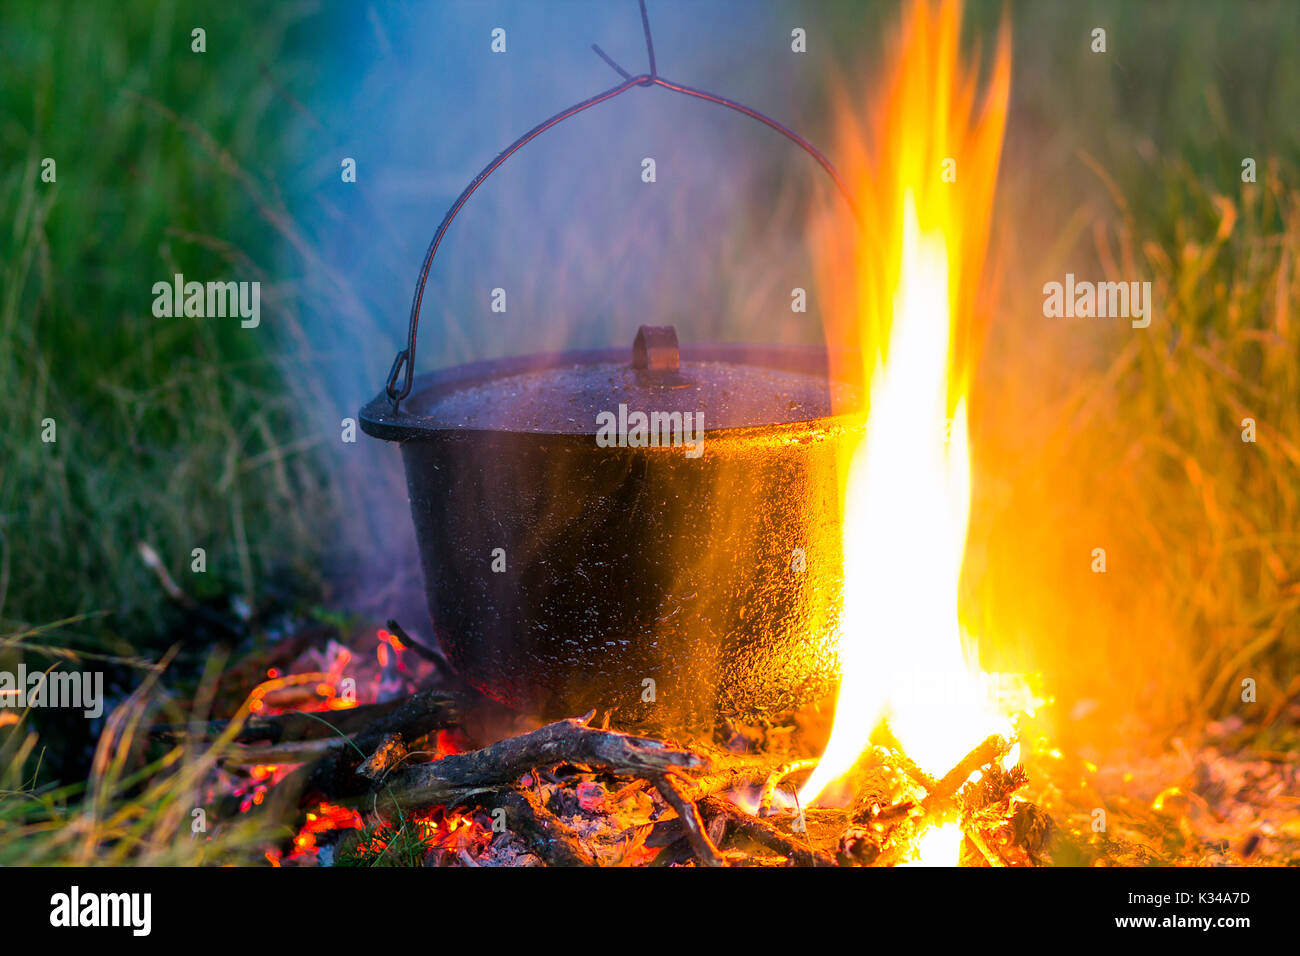 Camping Geschirr - Topf auf dem Feuer auf einem Outdoor-Campingplatz  Stockfotografie - Alamy